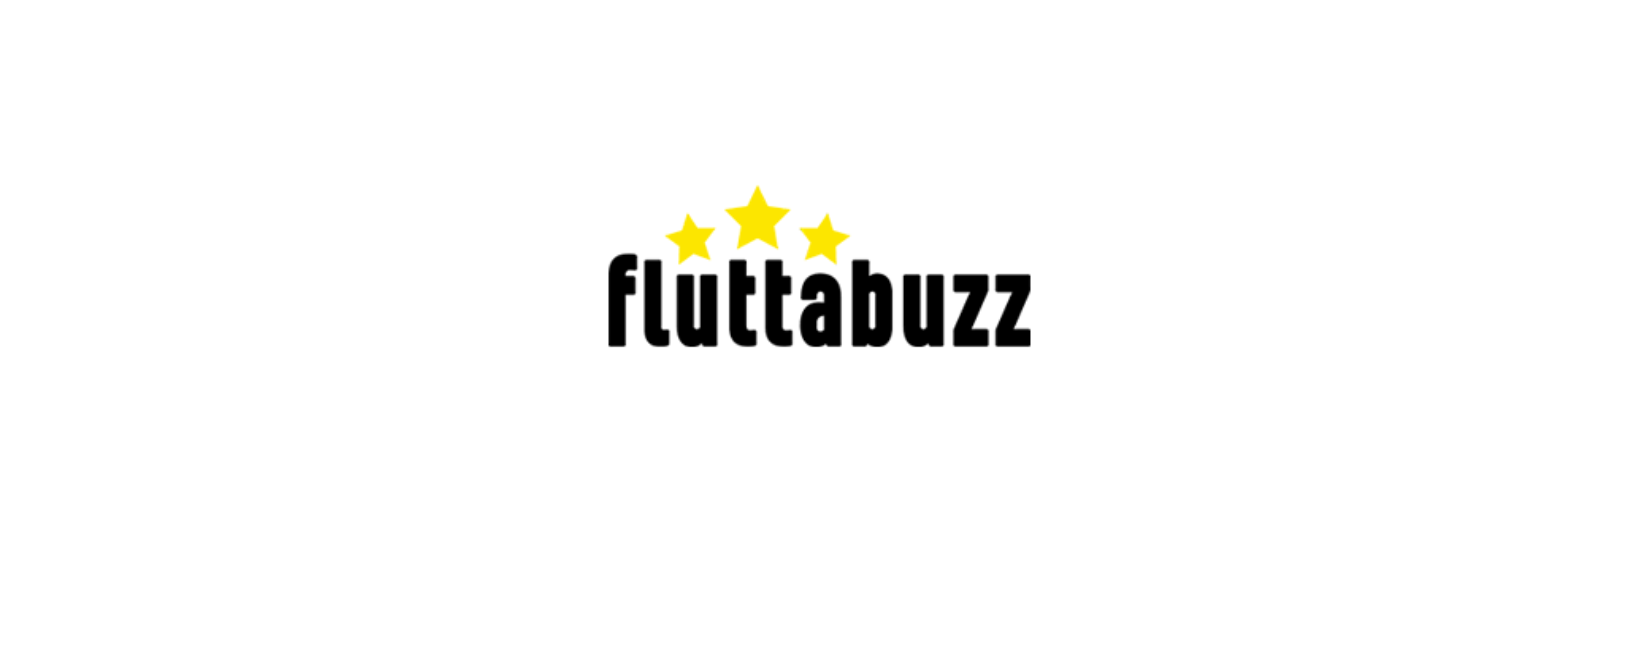 Fluttabuzz Discount Code 2022